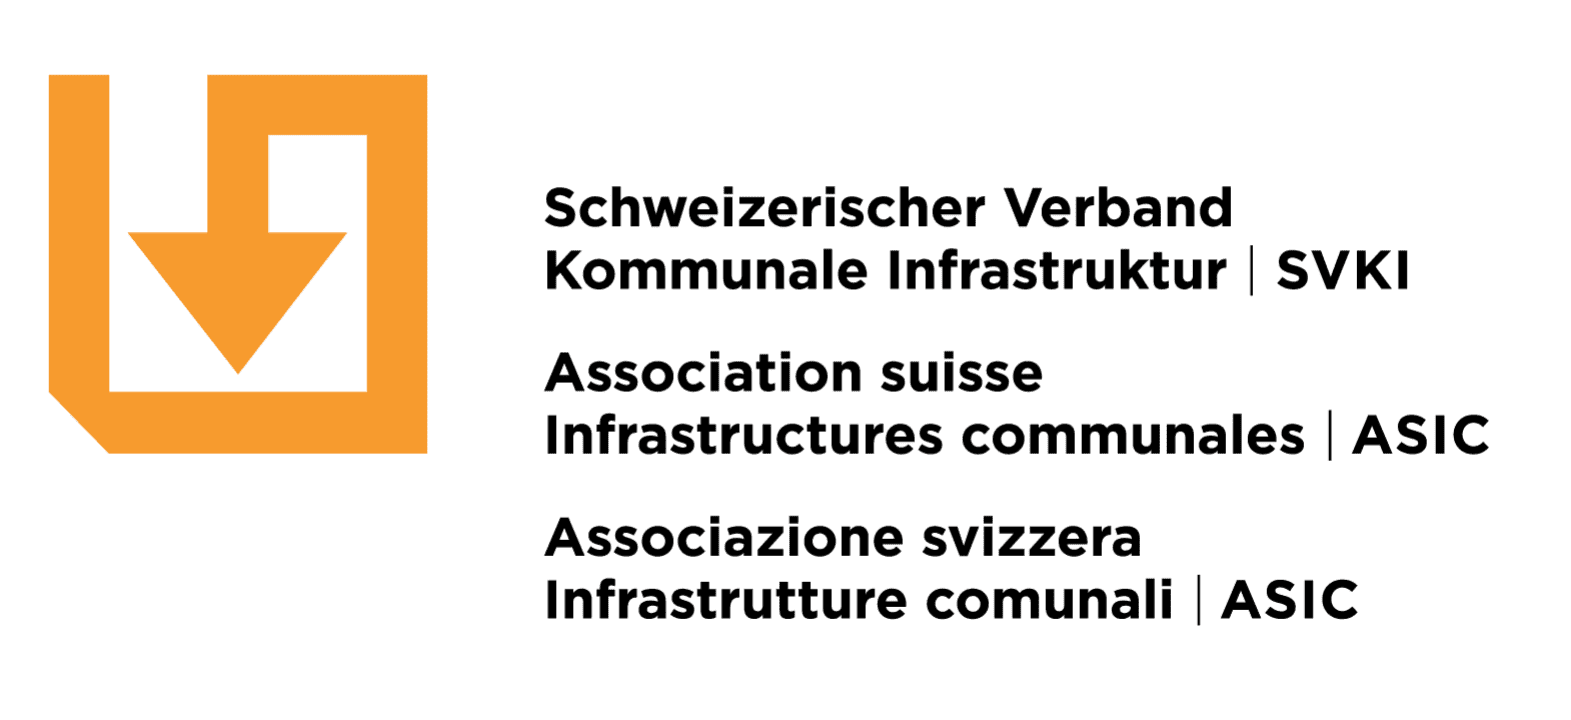 Schweizerischer Verband Kommunale Infrastruktur